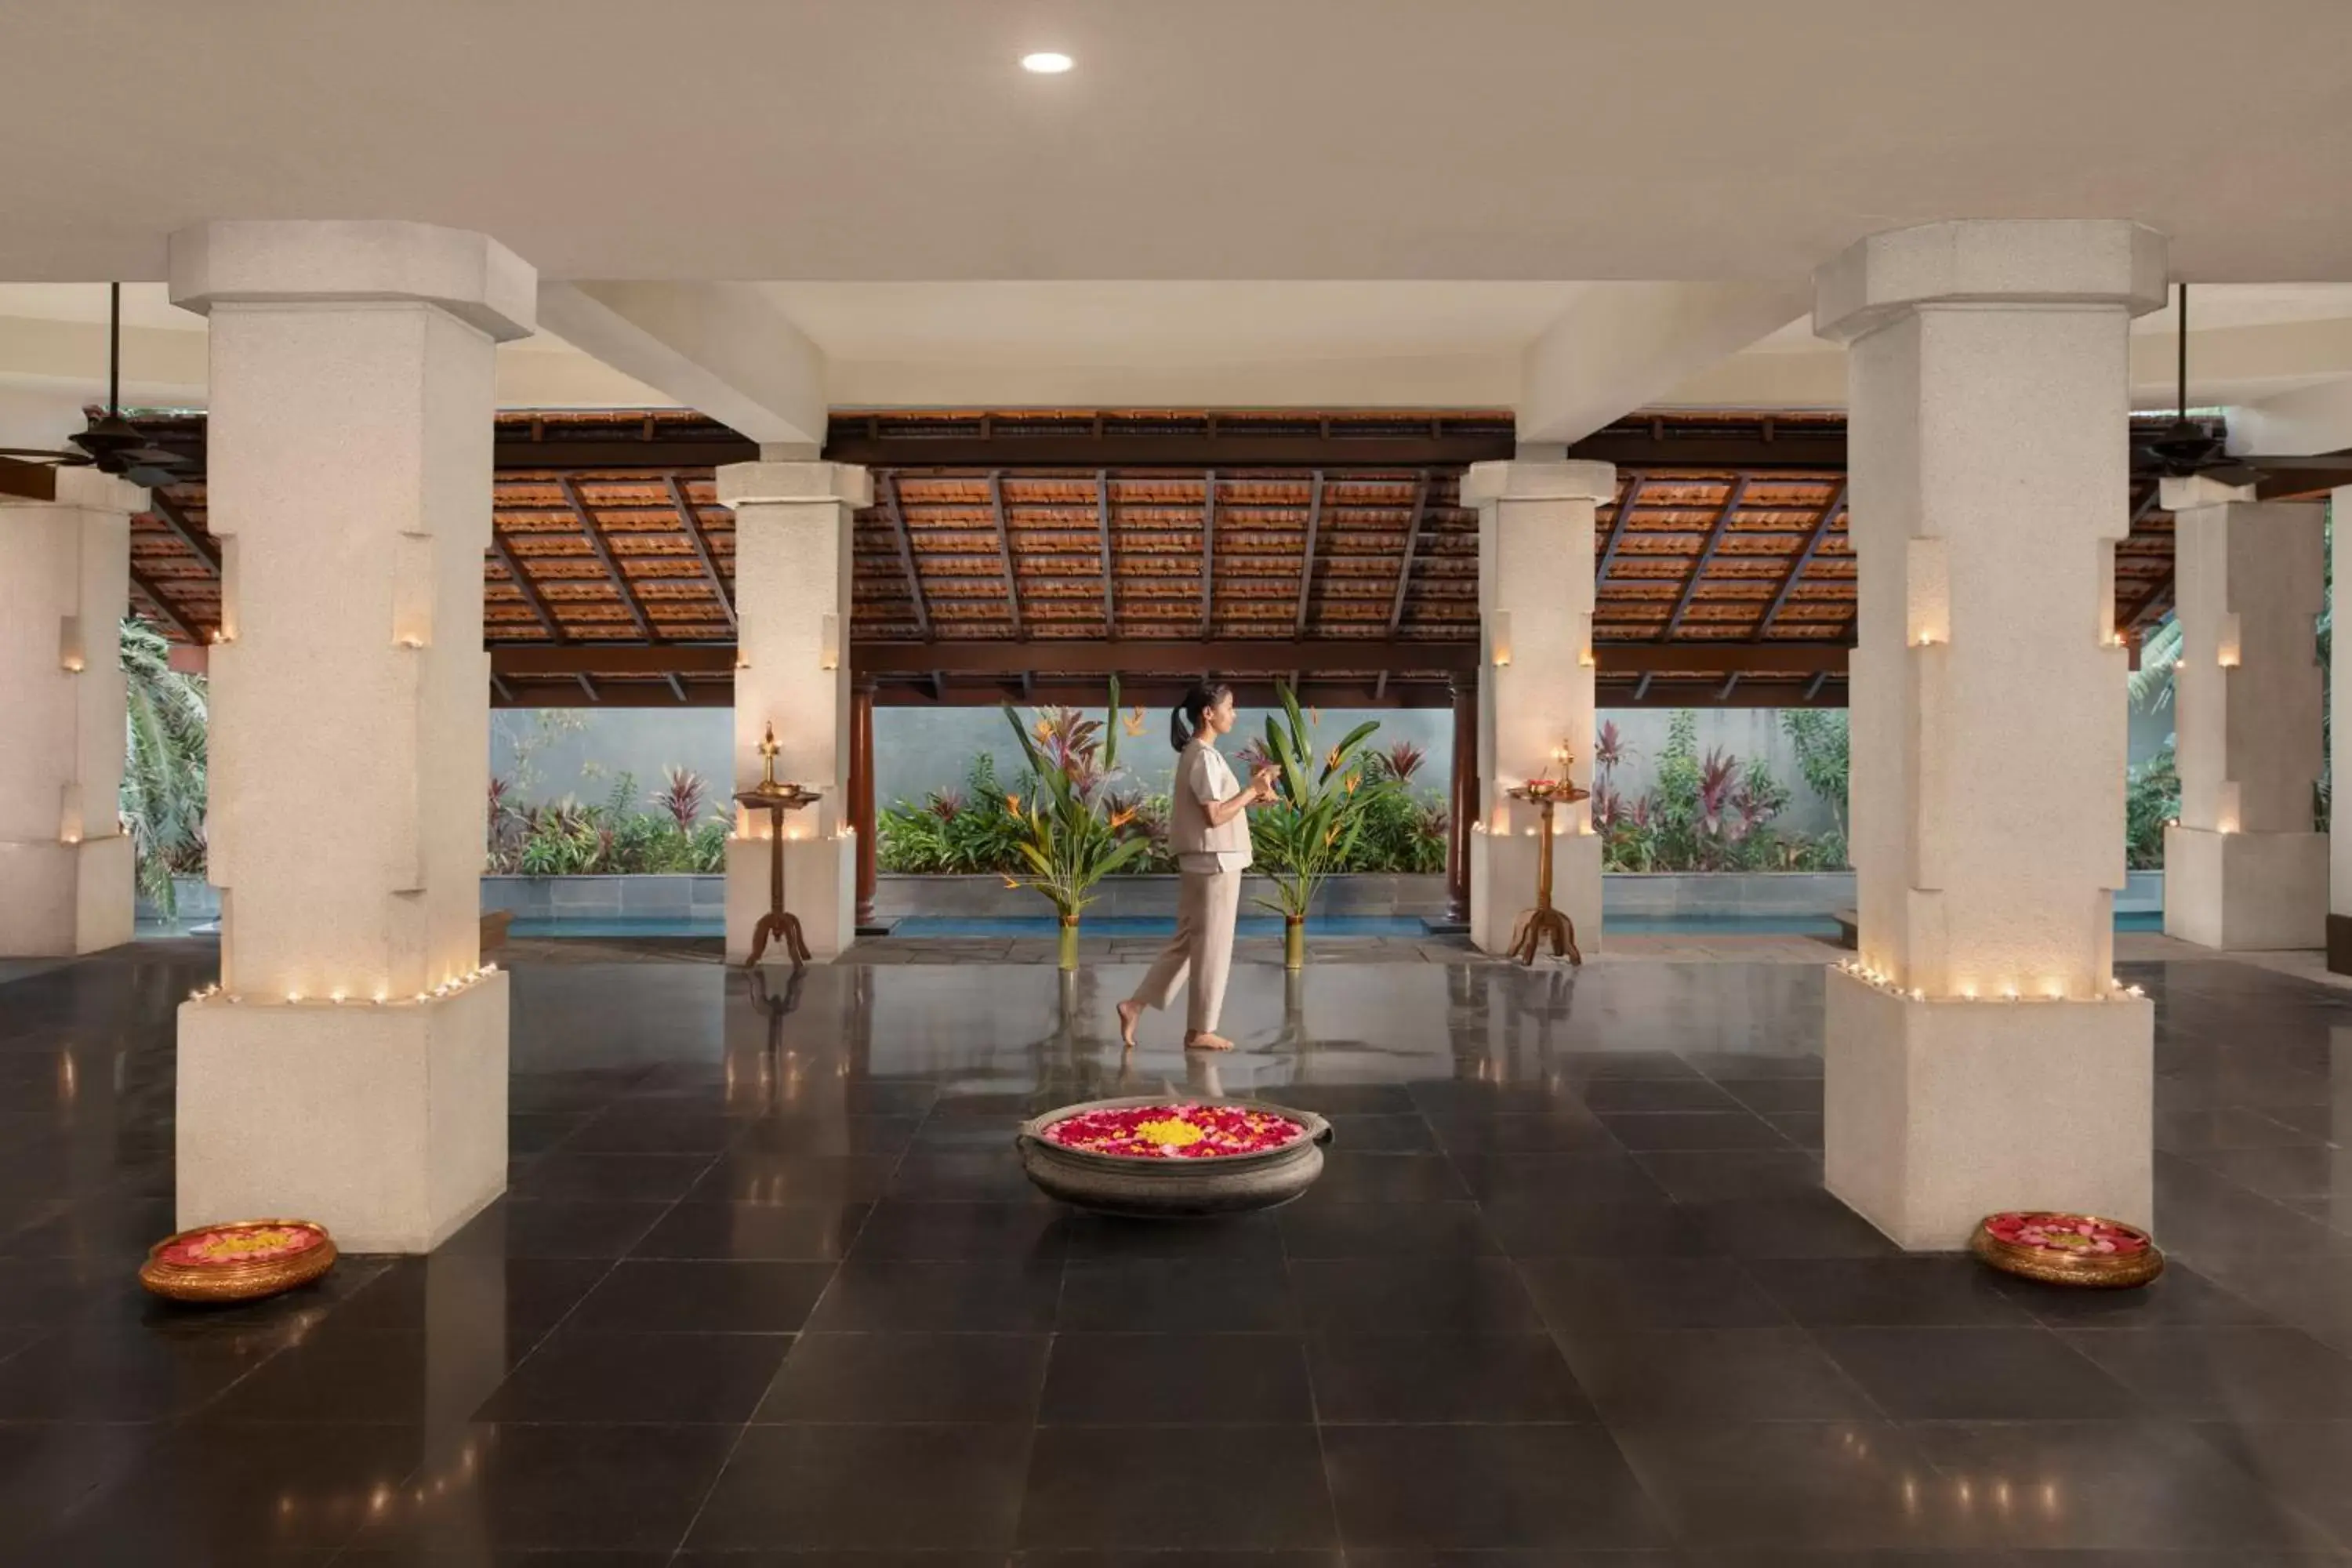 Spa and wellness centre/facilities in Taj Exotica Resort & Spa, Goa